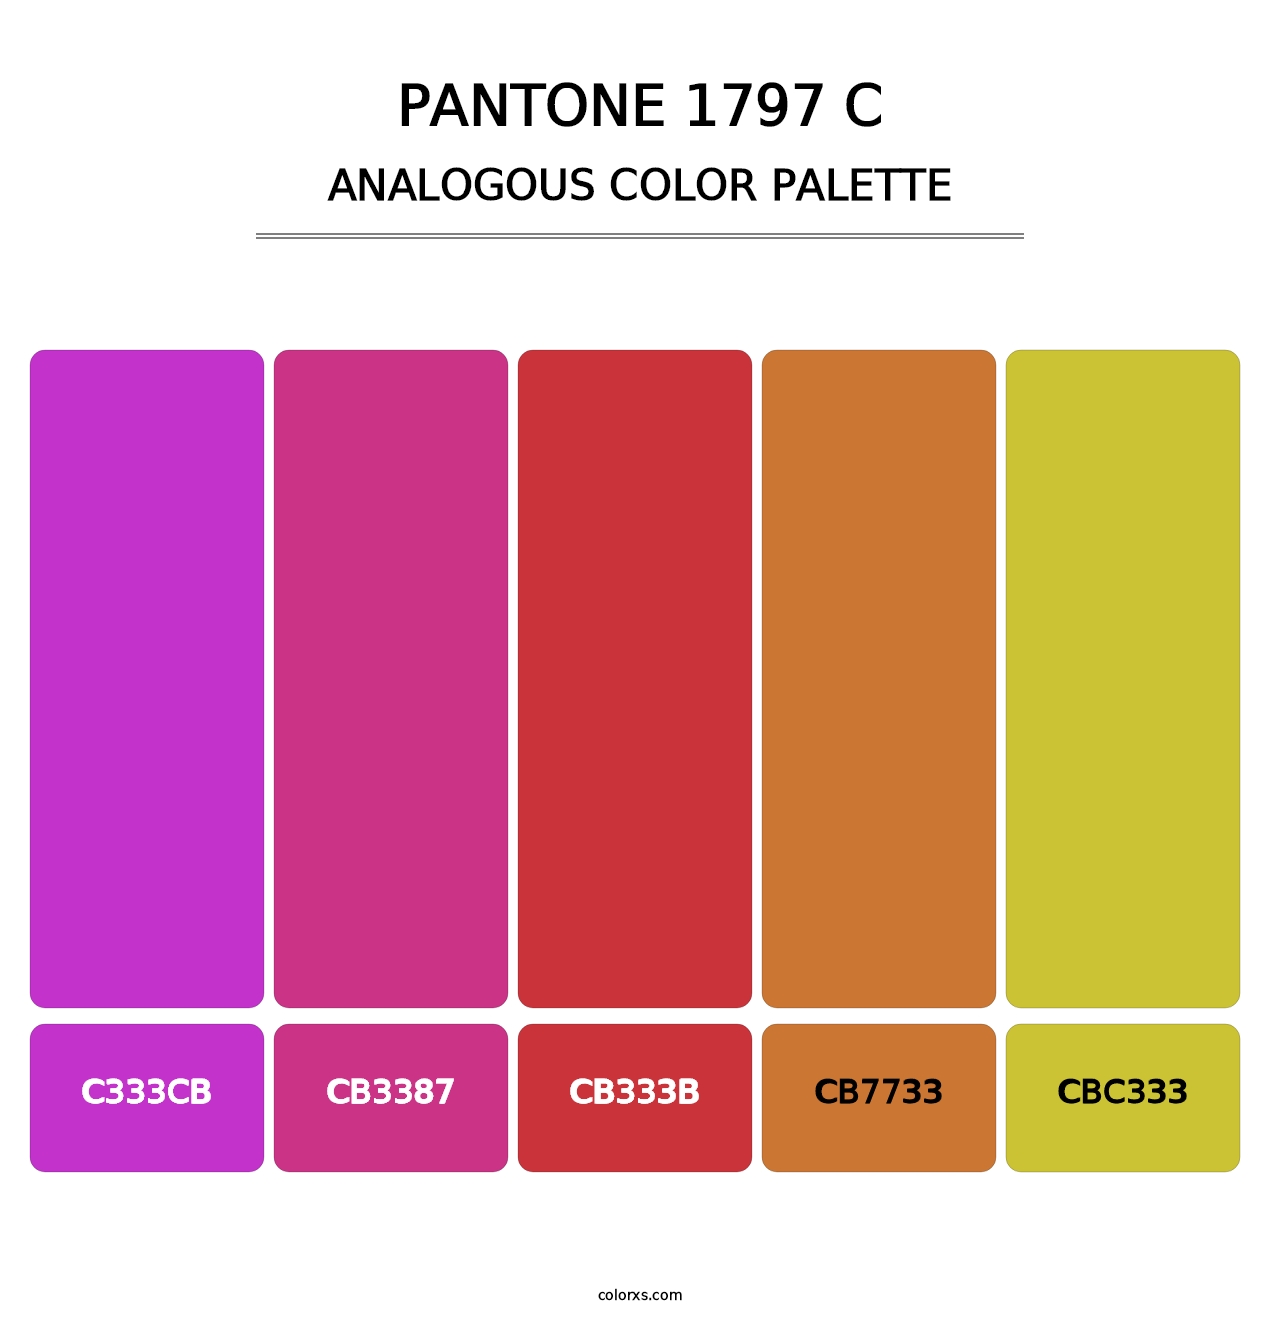 PANTONE 1797 C - Analogous Color Palette